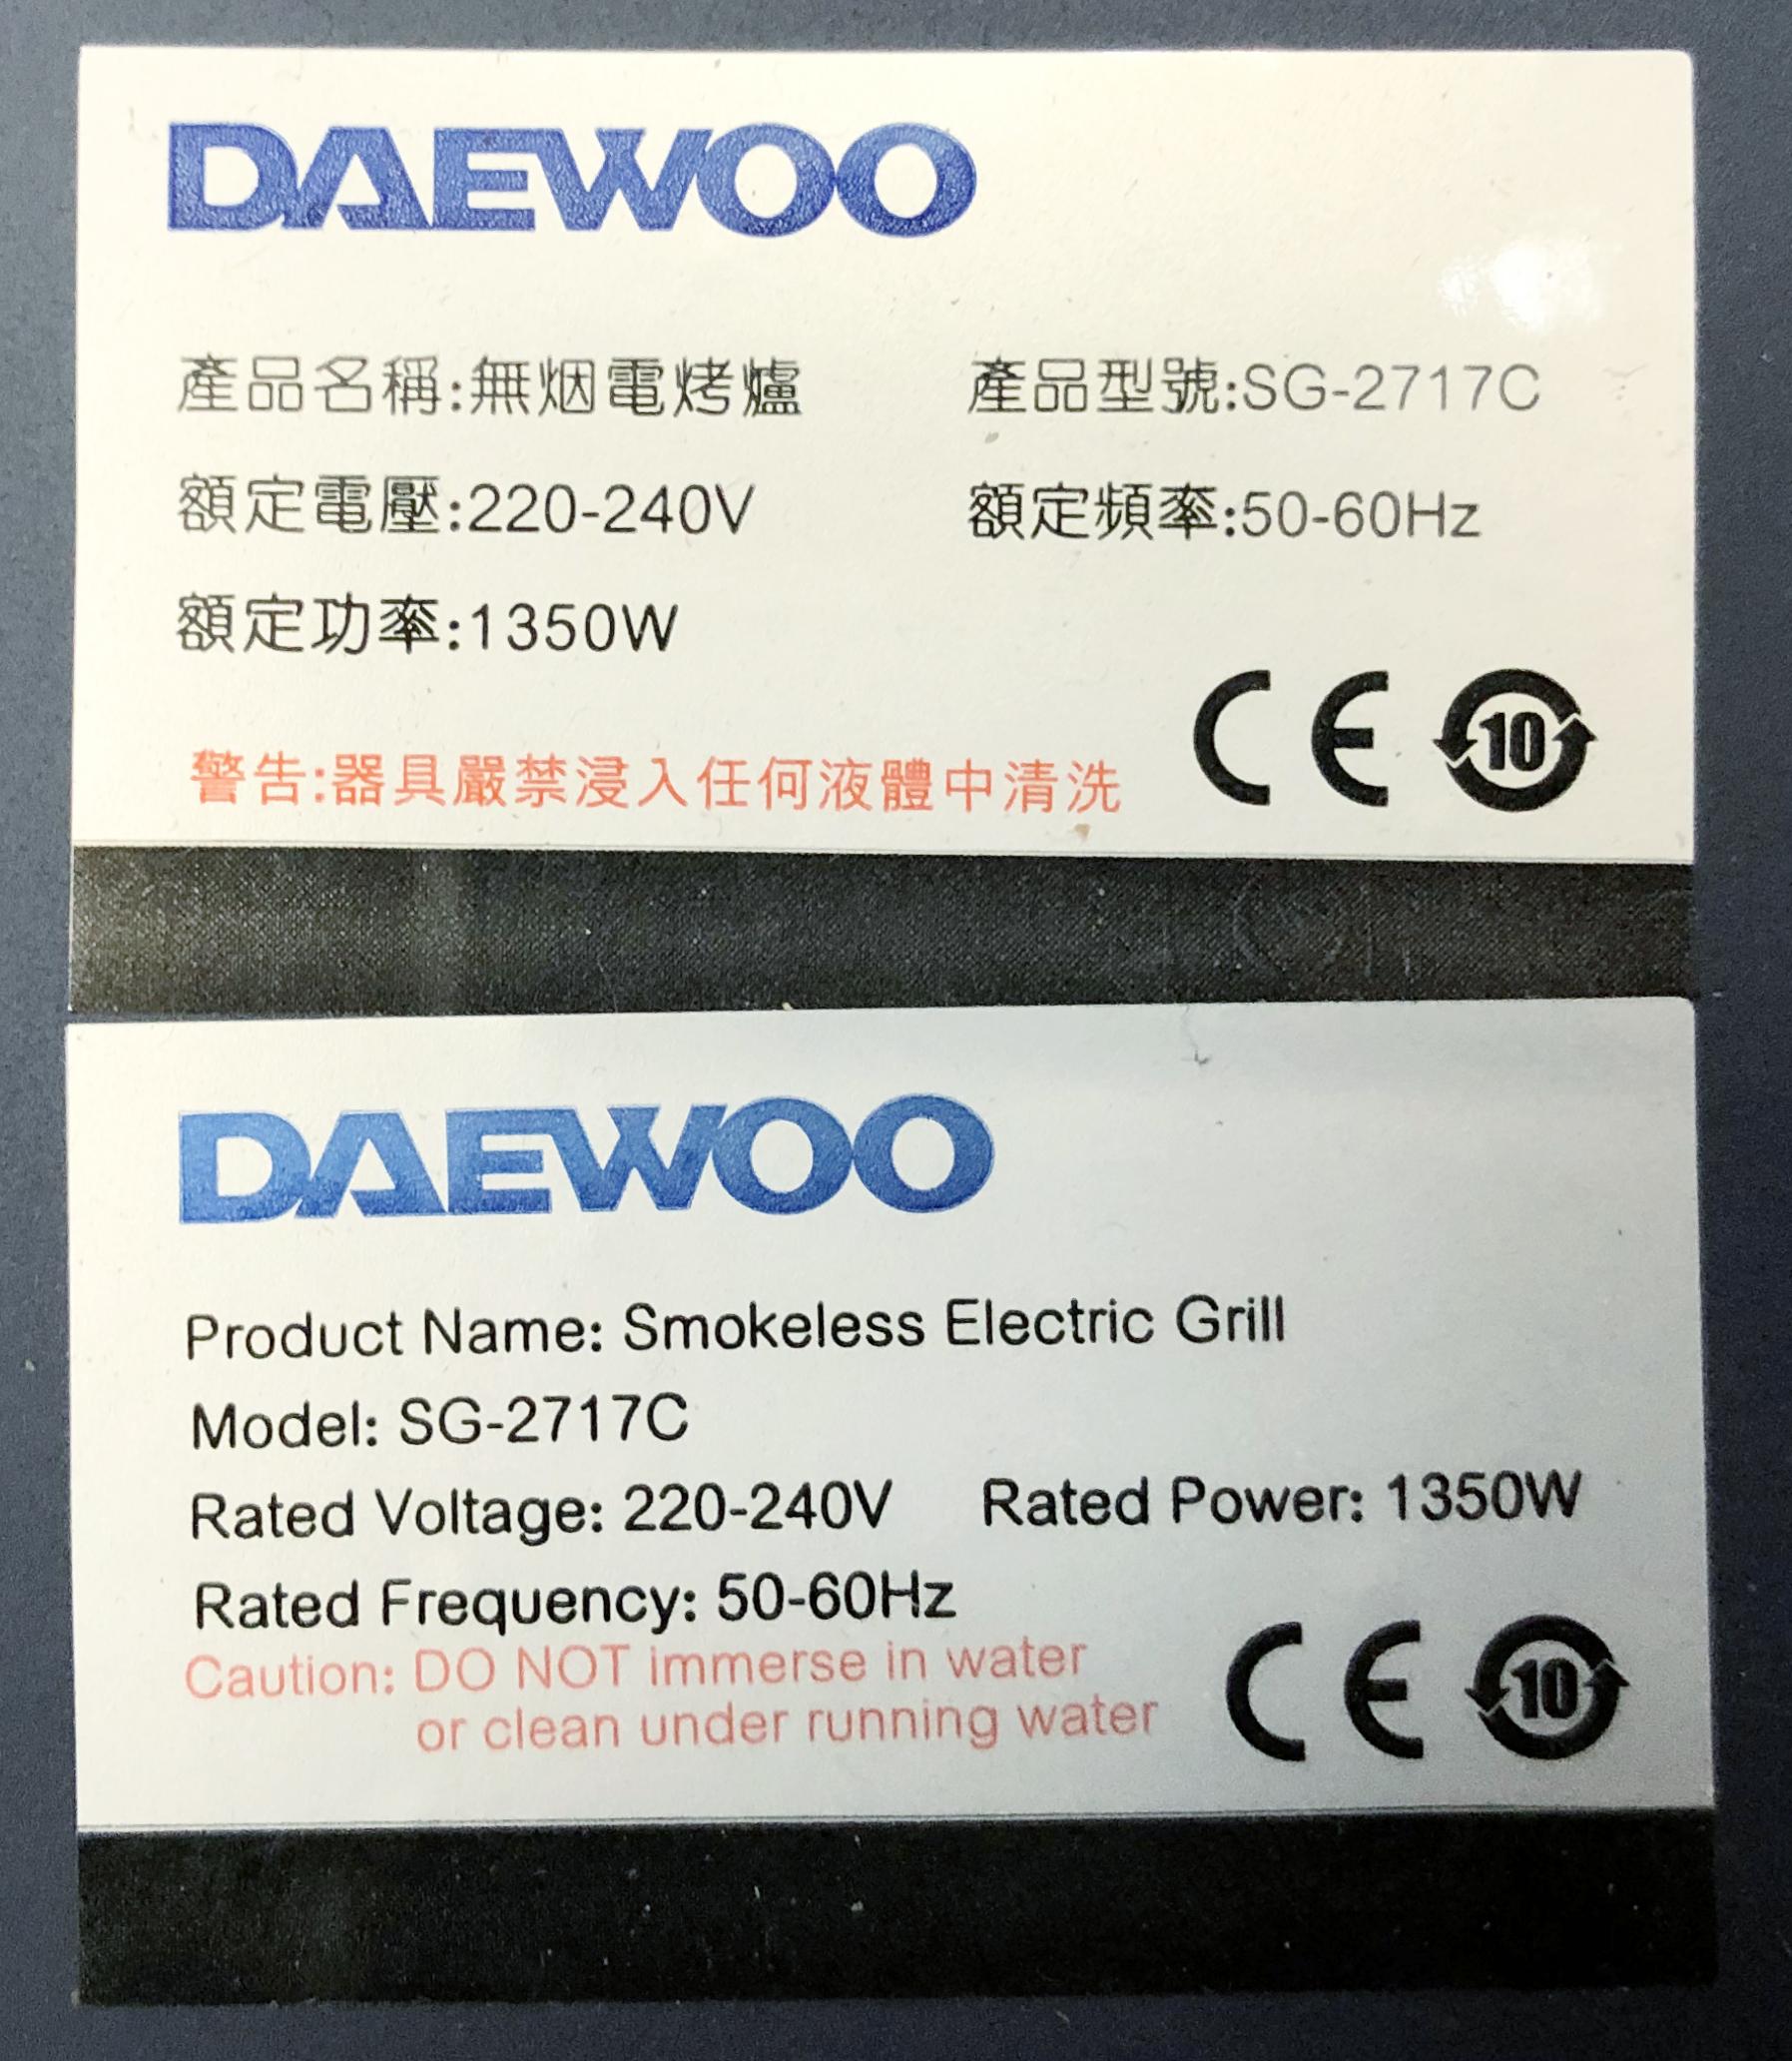 機電工程署今日（三月十五日）呼籲市民停用「Daewoo」牌一款型號為SG-2717C、外殼為藍色的電烤爐。圖示位於該款電烤爐底部的產品標示。